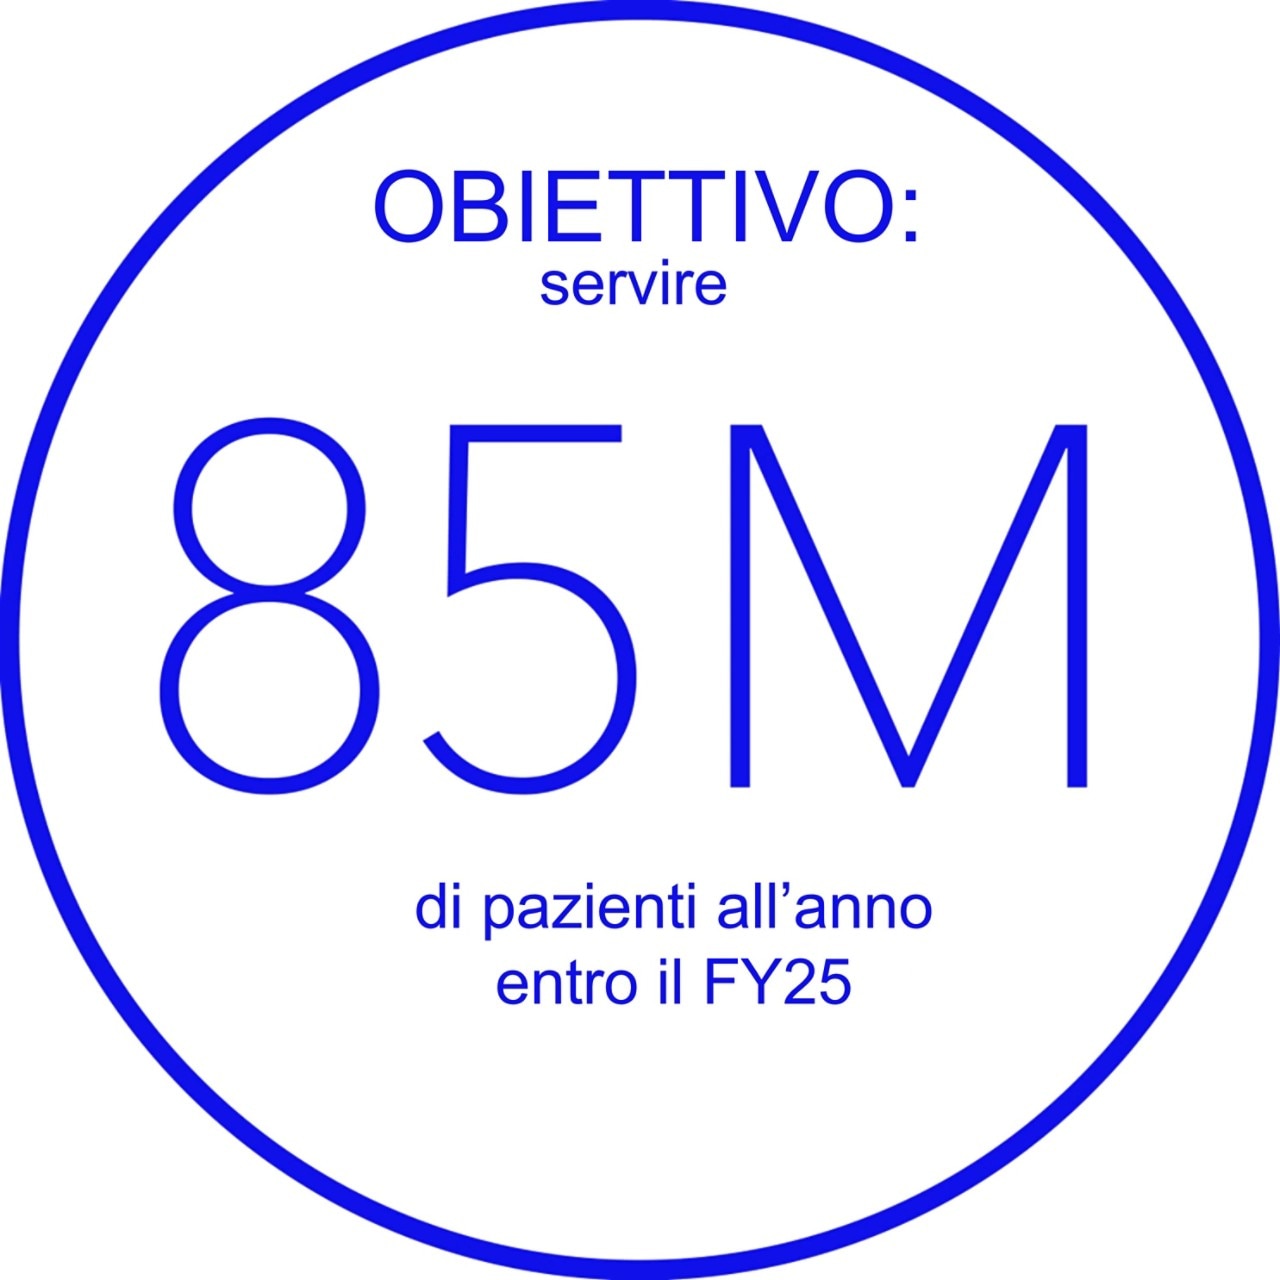 Obiettivo 85 milioni di pazienti all'anno entro FY25